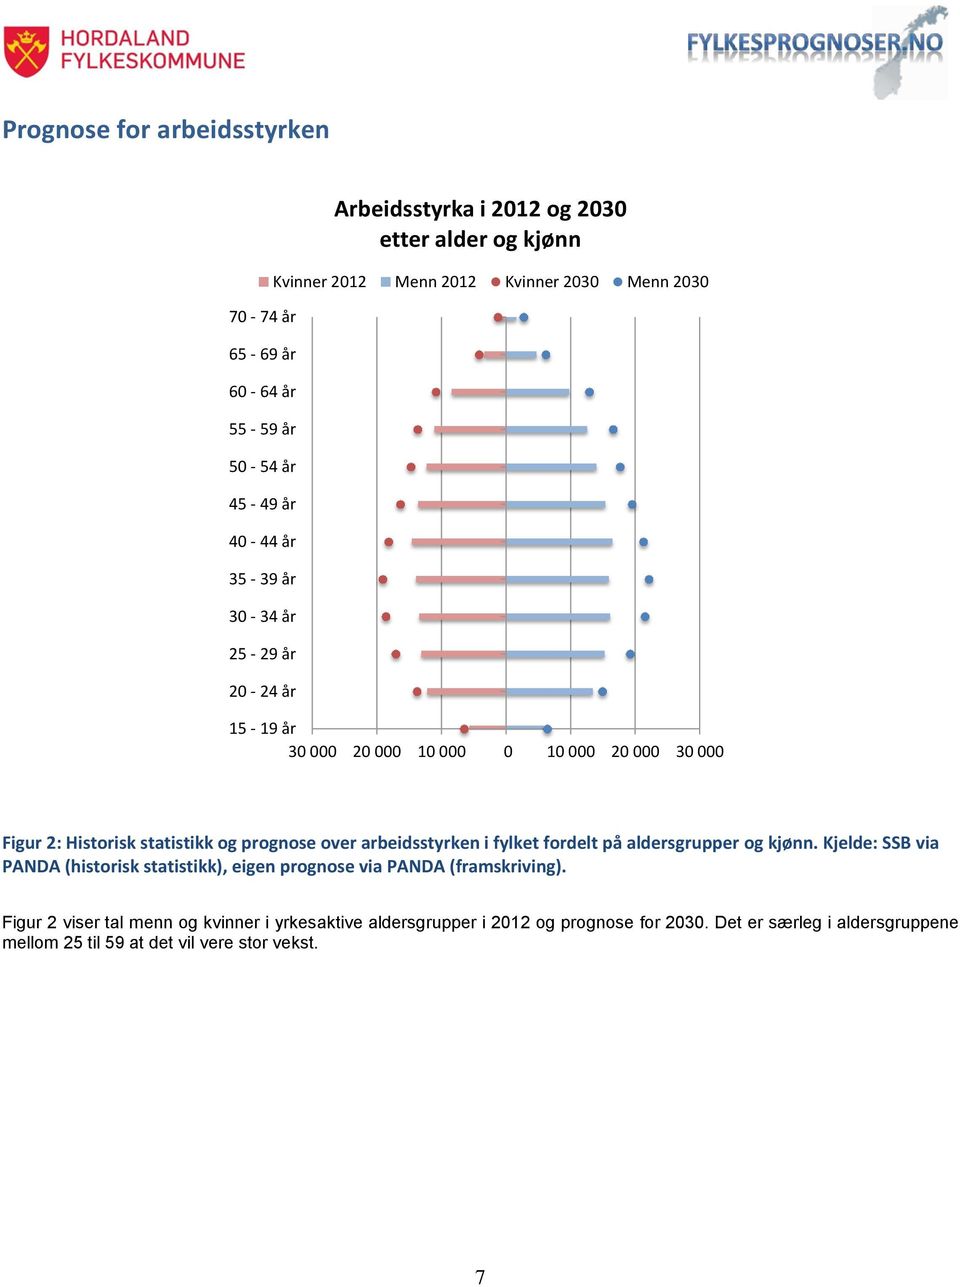 prognose over arbeidsstyrken i fylket fordelt på aldersgrupper og kjønn. Kjelde: SSB via PANDA (historisk statistikk), eigen prognose via PANDA (framskriving).